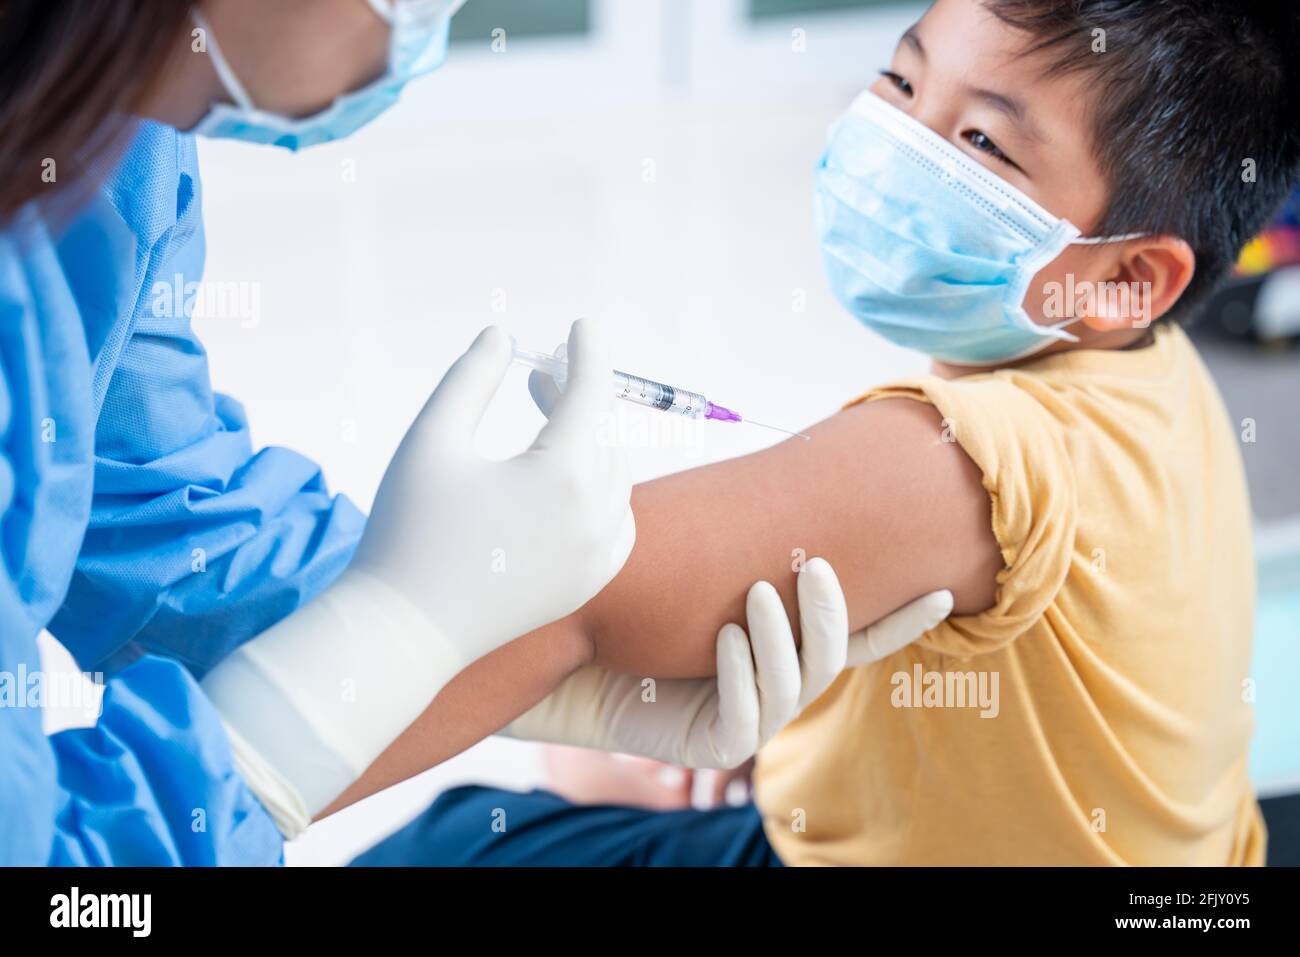 Arzt, der eine Impfung in der Schulter des Patienten Junge oder Kind Person und glücklich, Injektion am Arm, Coronavirus, covid-19 Impfstoffkrankheit Vorbereitung Stockfoto